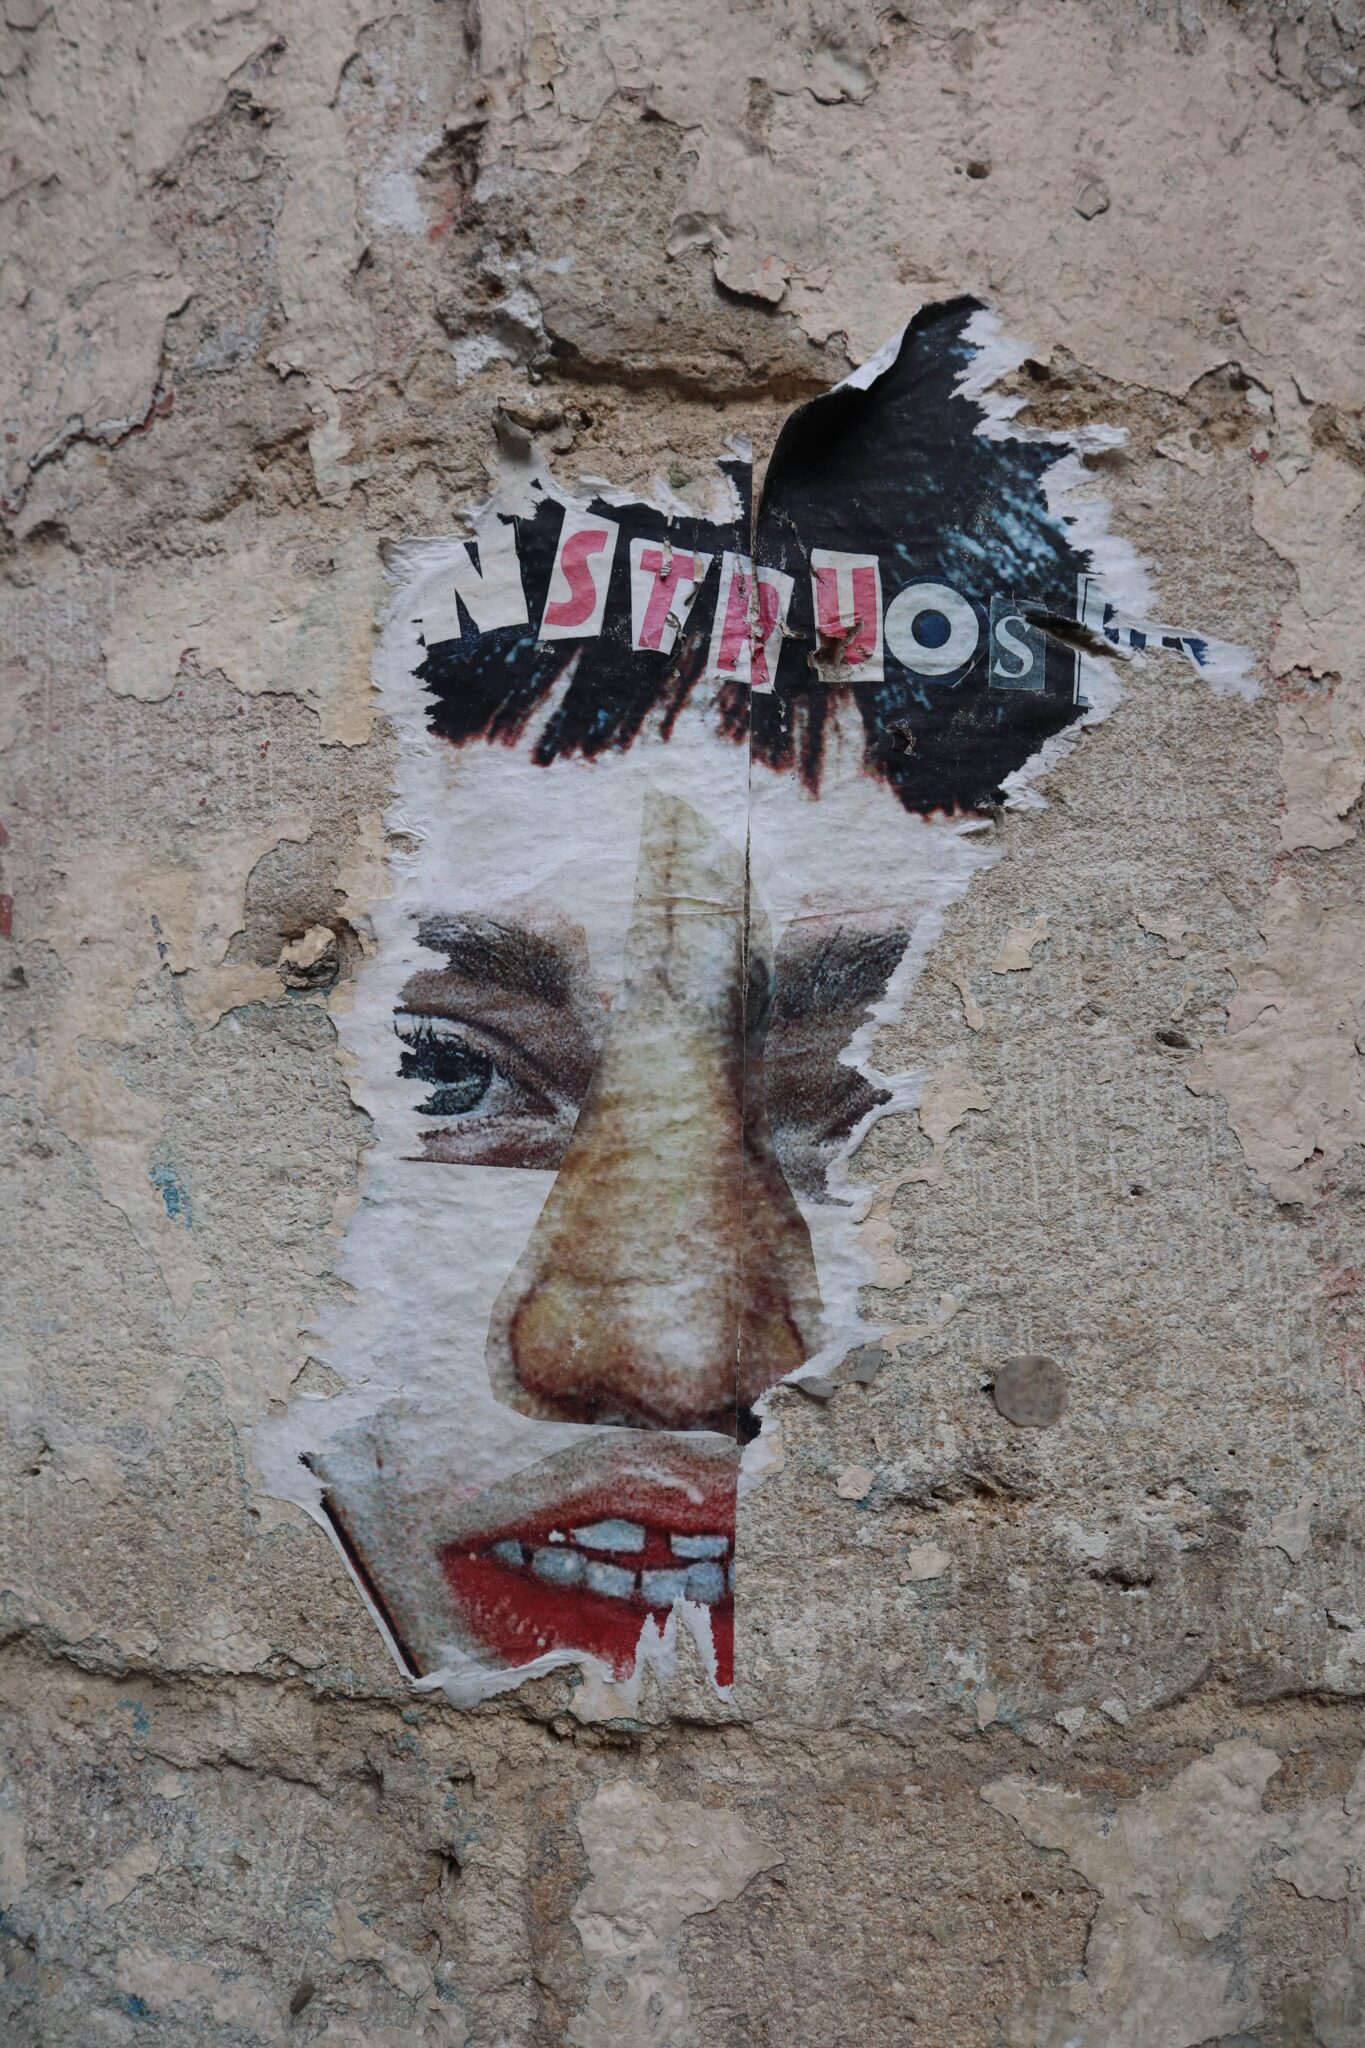 “[...]nstruos[...]”. Ce reste de collage survit sur un mur près de la place Camille Jullian, à Bordeaux. Il représente le collage d’un visage humain et semble inviter le ou la passant·e à questionner son humanité. Le street art tire ses origines de plusieurs courants, comme par exemple au Mexique, où de nombreuses peintures murales apparaissent après la révolution de 1910.